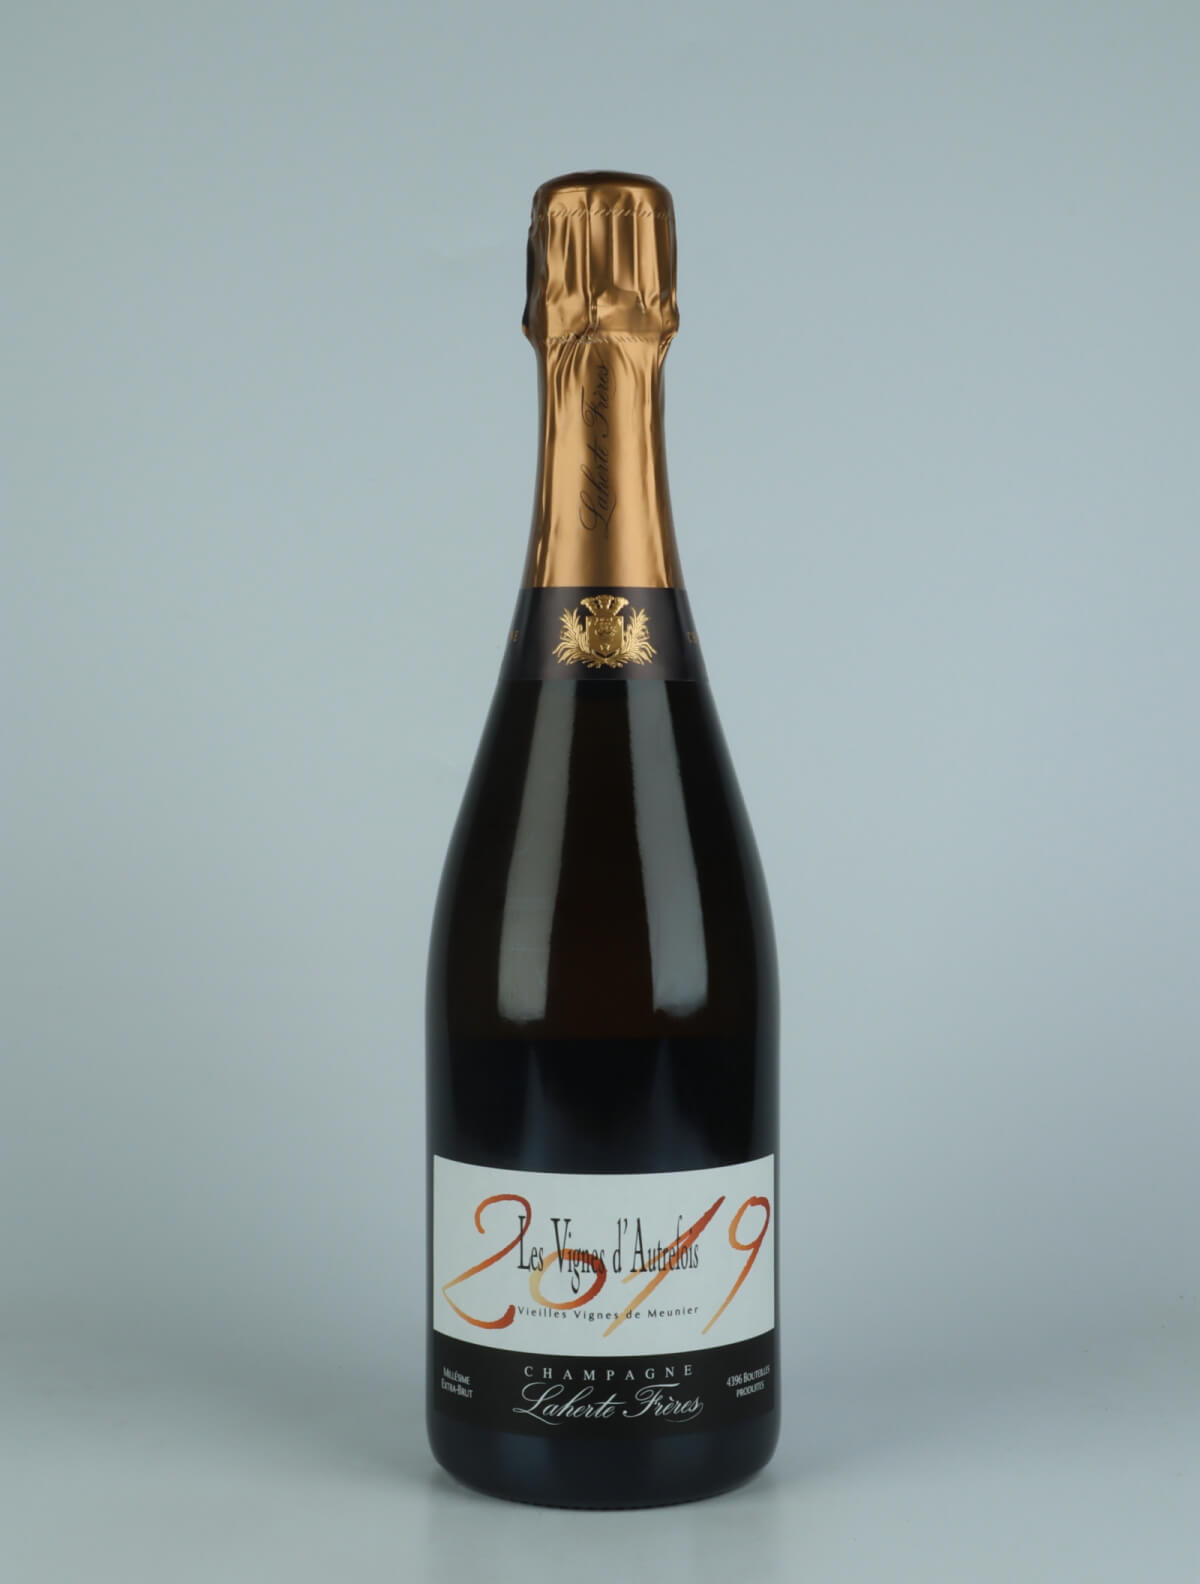 En flaske 2019 Les Vignes d'Autrefois Mousserende fra Laherte Frères, Champagne i Frankrig